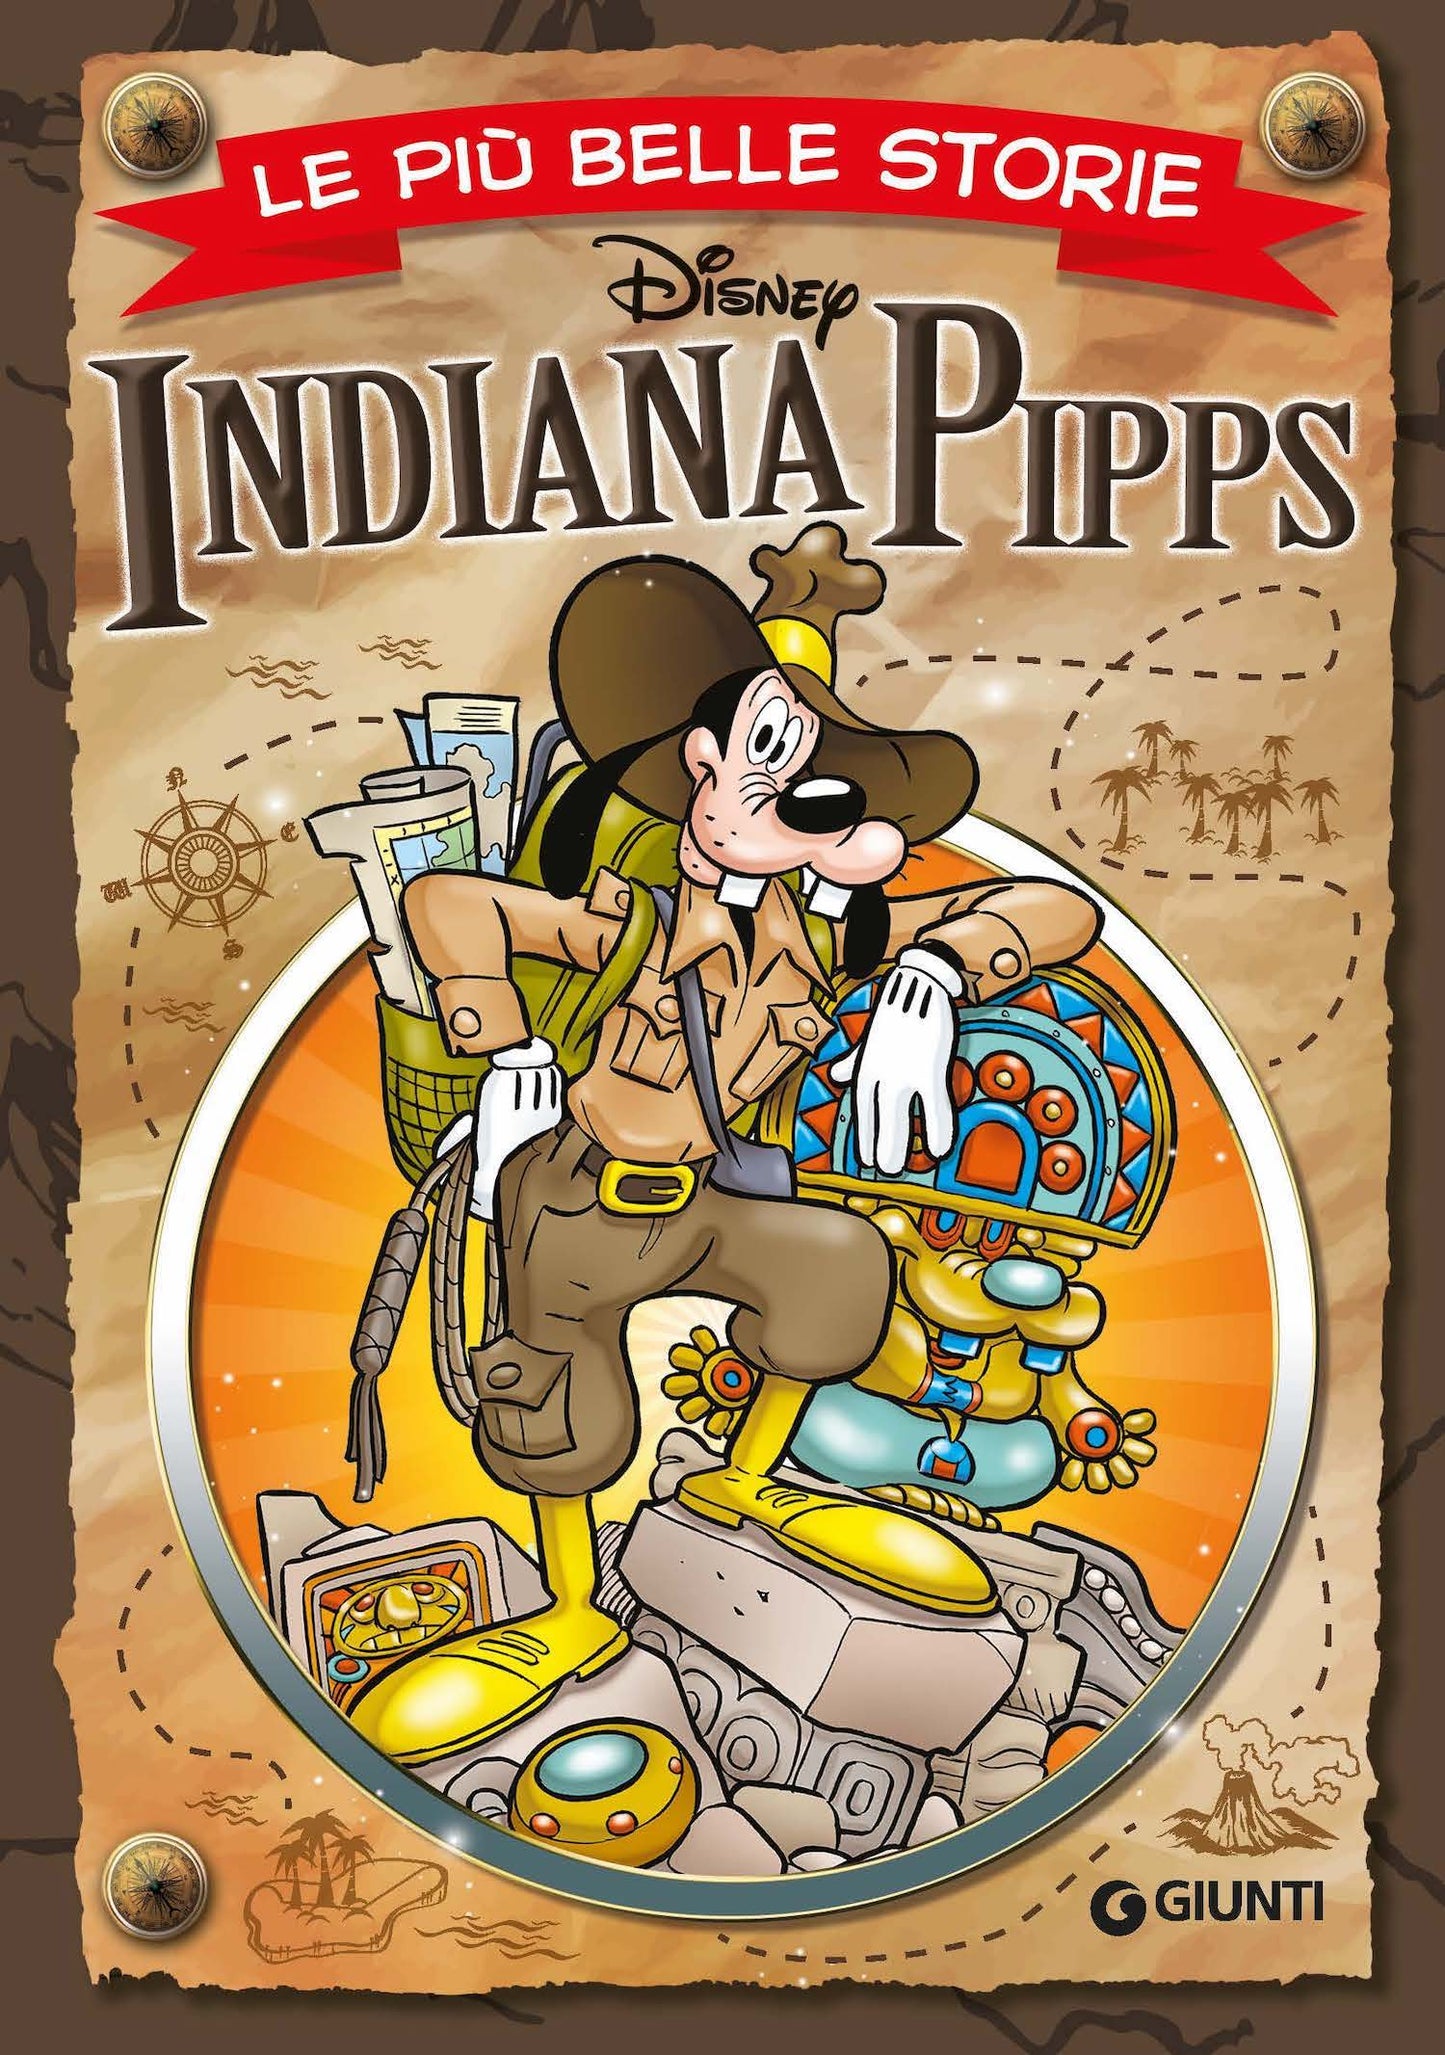 Indiana Pipps Le più belle storie Disney